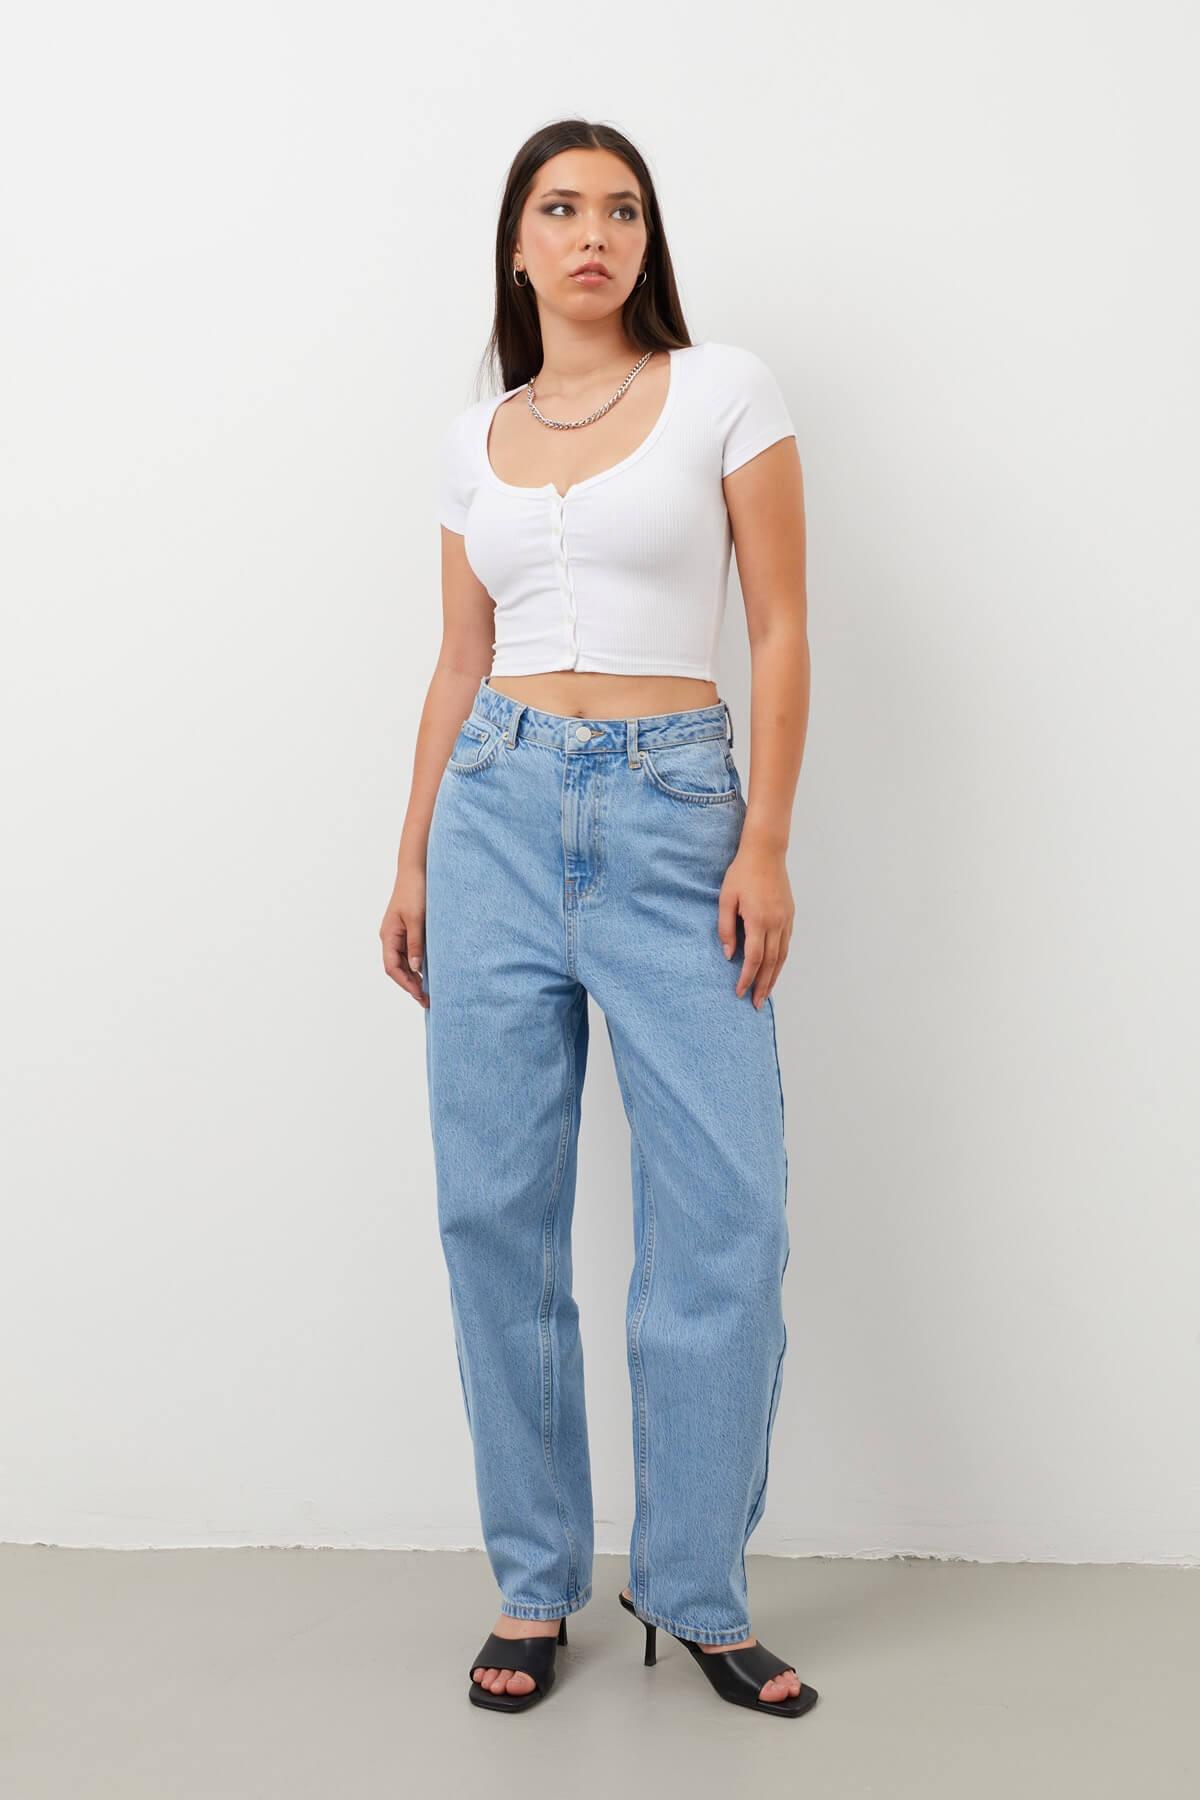 Banny Jeans Mom Fit Jean-broek voor dames met extra hoge taille, lichtblauw